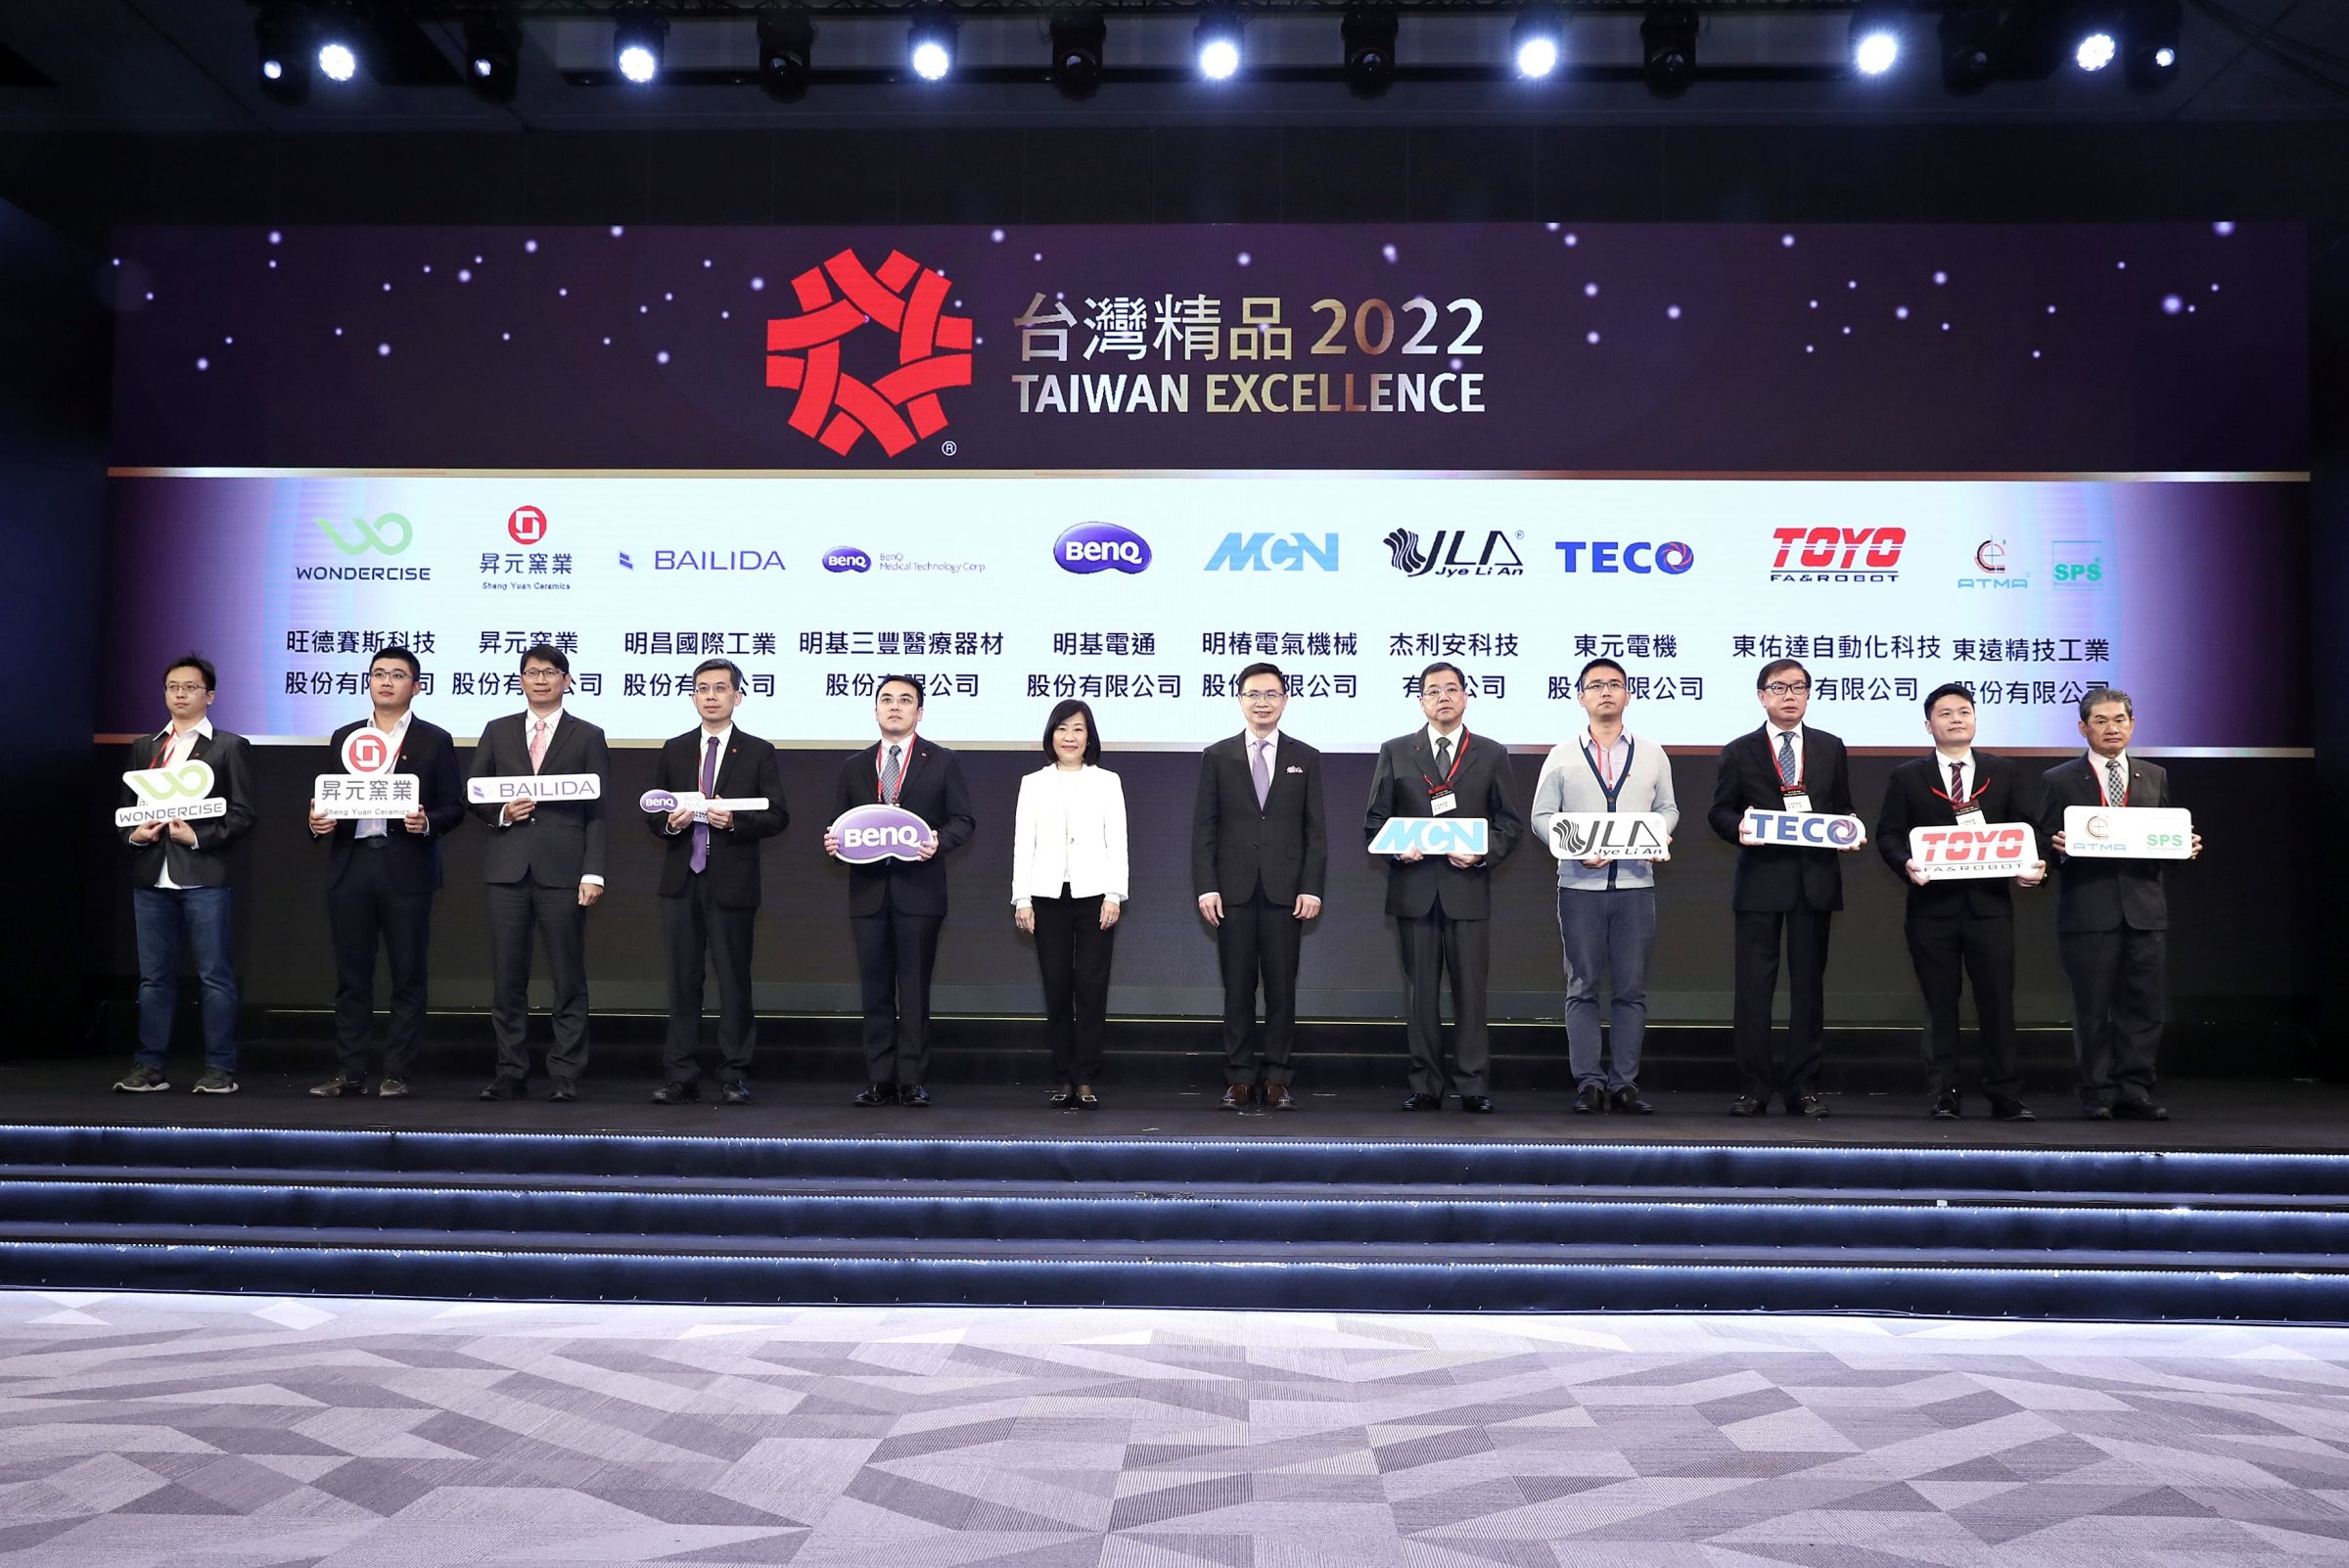 Şekil açıklaması : 24 Kasım 2021'deki ödül töreninde, ATMA Başkanı Bay Chen'e (sağdan 1.) ödül, gerçeğin tasdikinde arzu edilen ödül olarak verildi. “En yüksek kaliteyi taahhüt eden” yönetim felsefesinin değeri ile örtüşmektedir.